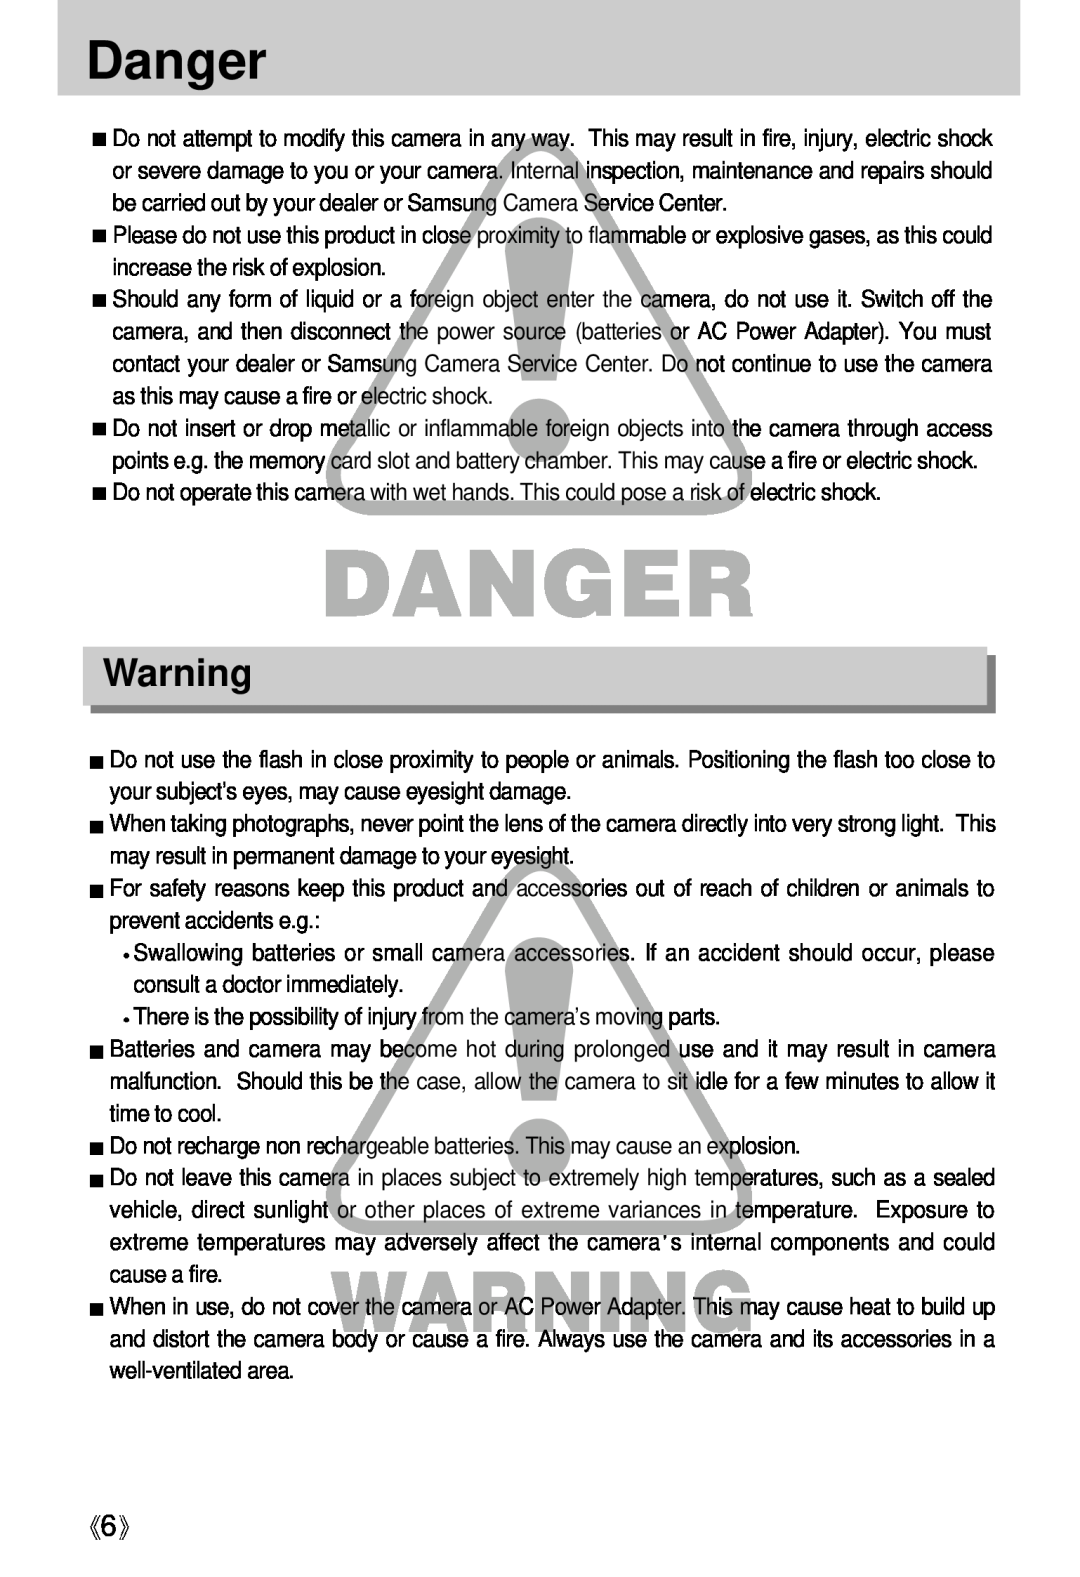 Samsung Digimax U-CA user manual Danger 